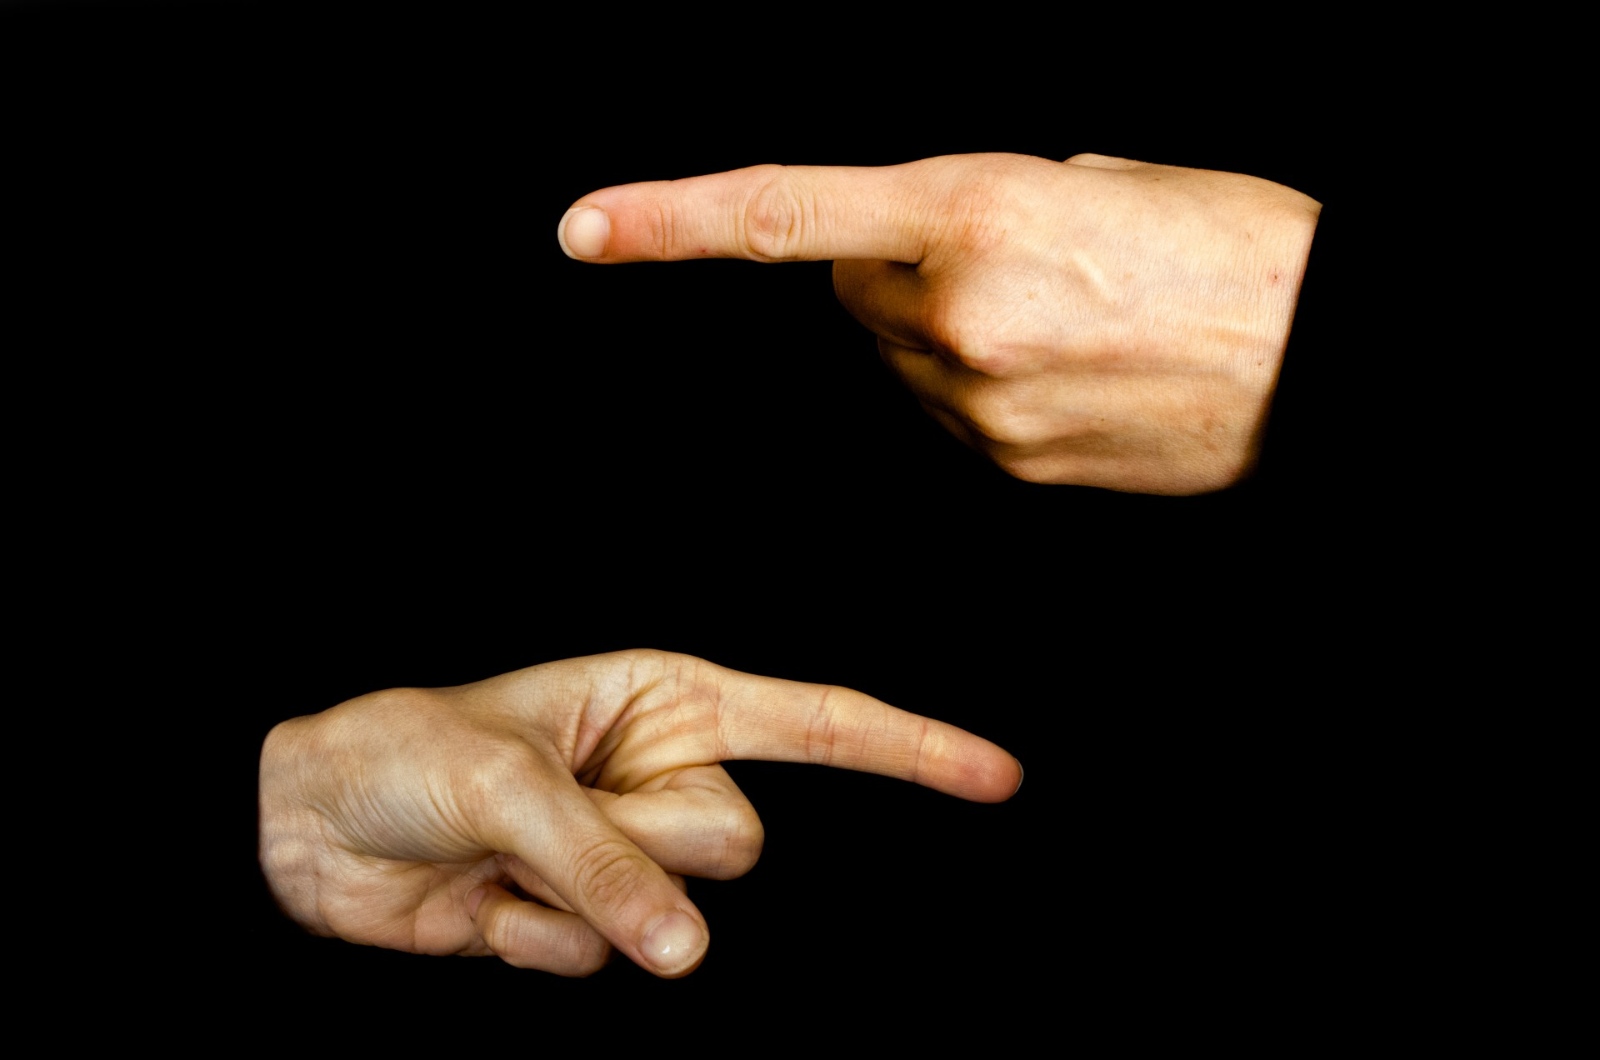 „Hand mit Zeigefinder“, fotografiert von George Hodan. Lizenz: gemeinfrei.